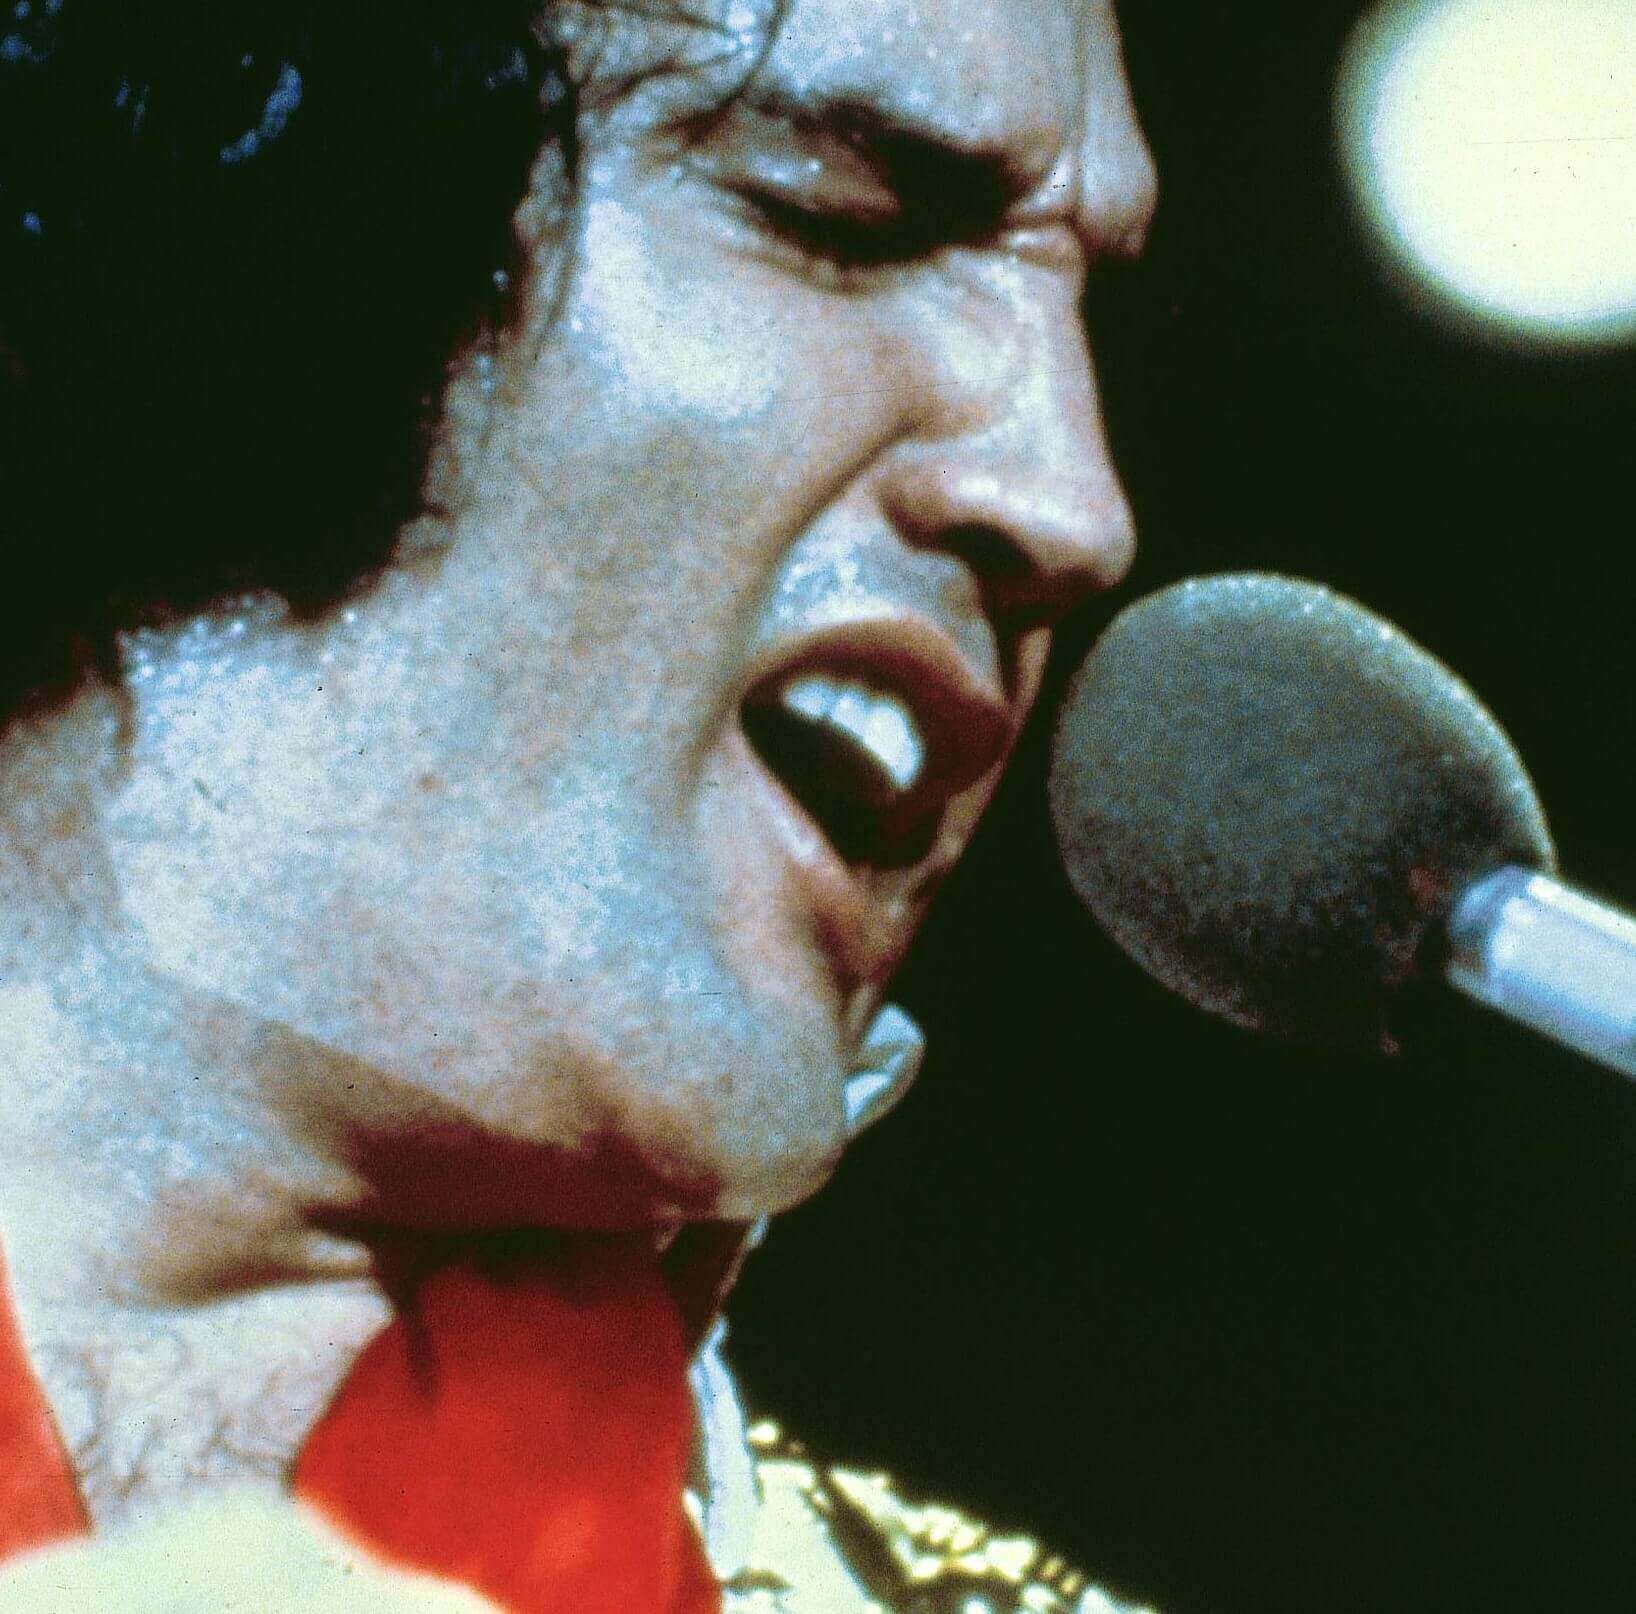 "Burning Love" singer Elvis Presley holding a microphone